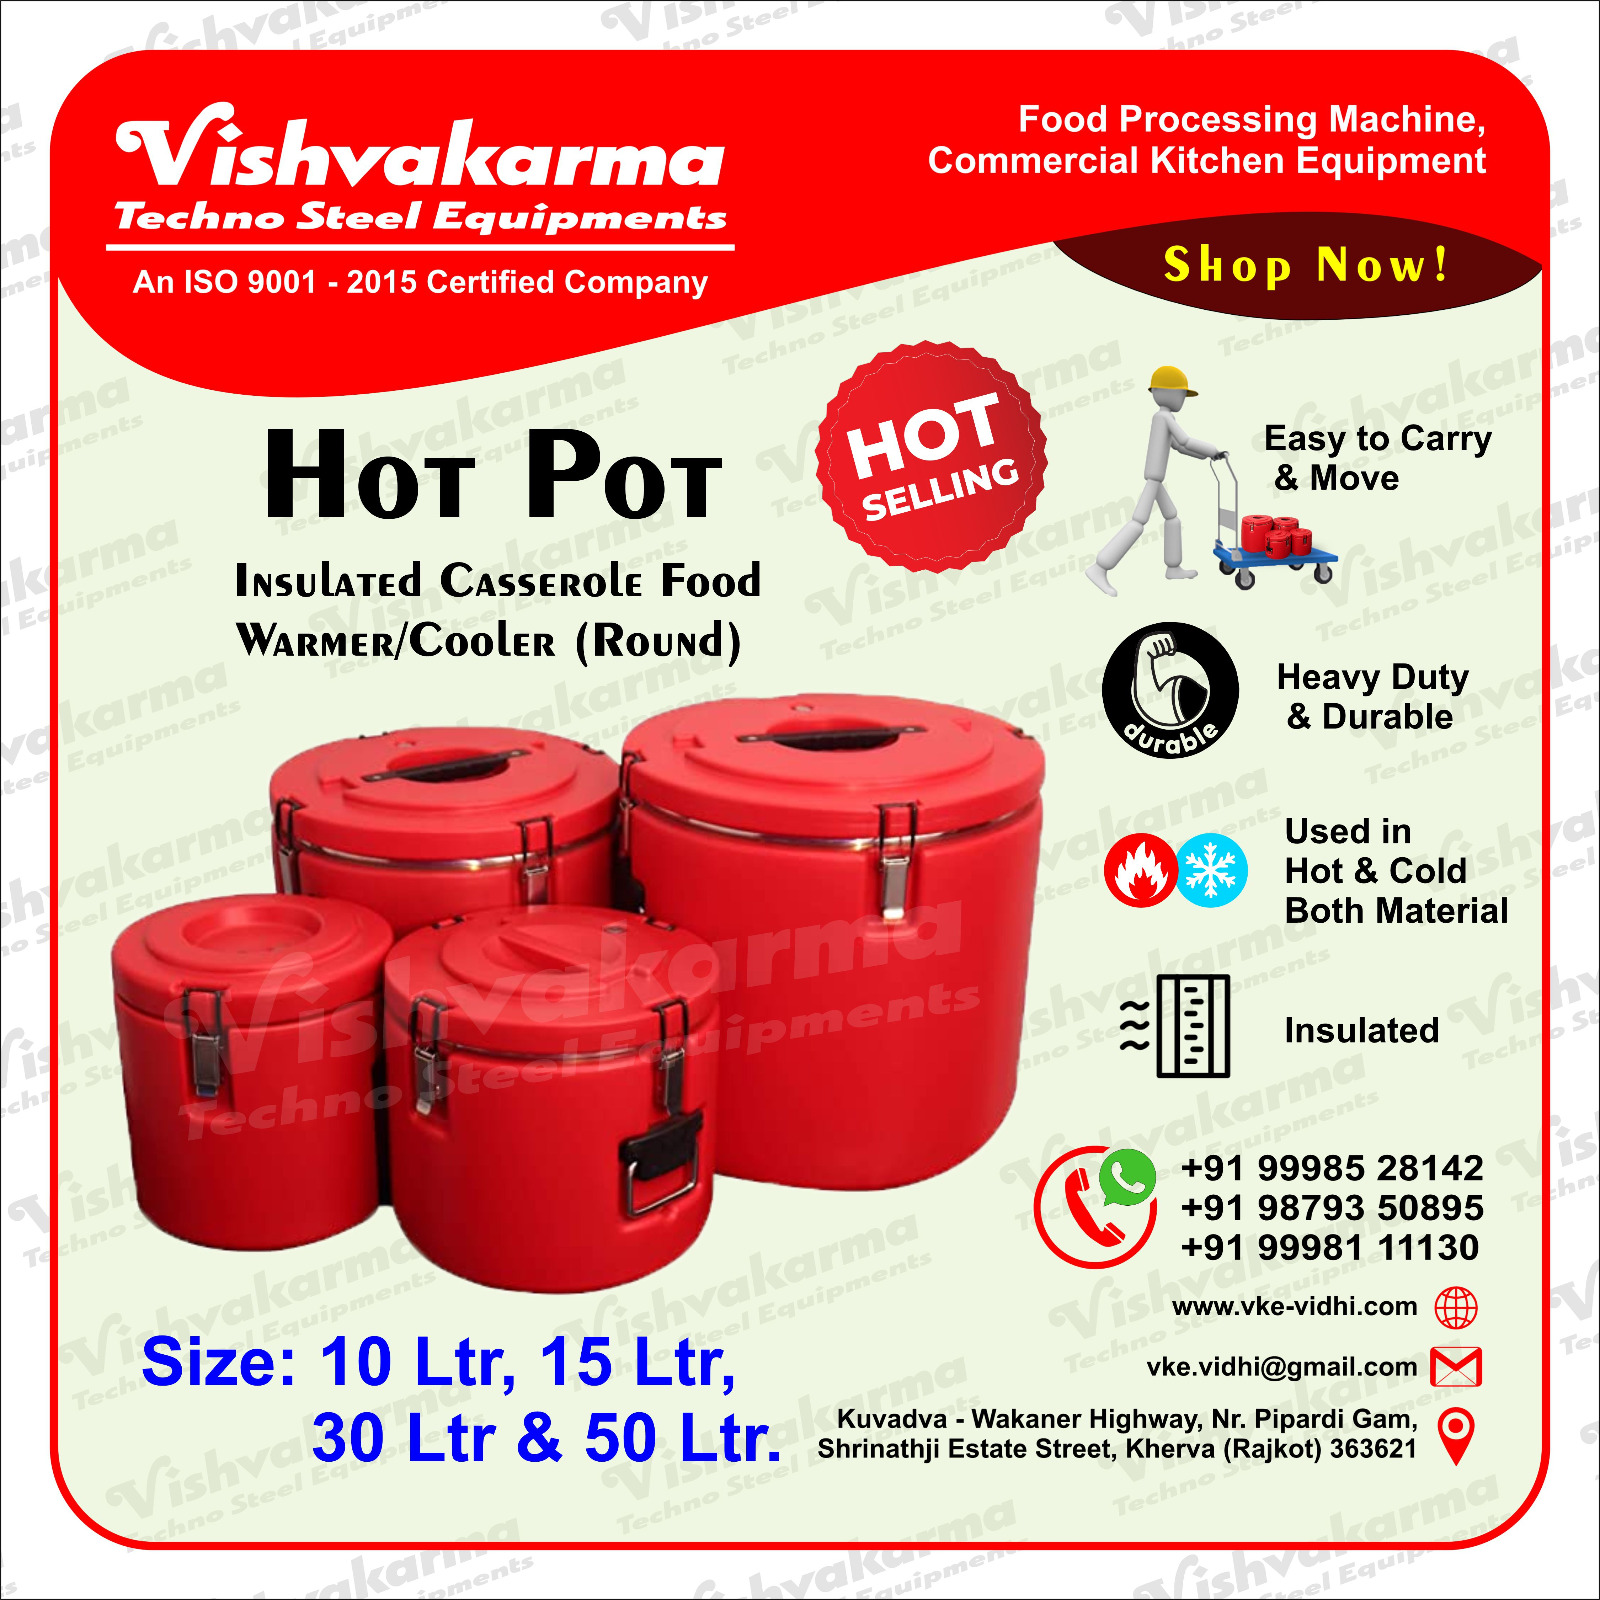 https://vke-vidhi.com/wp-content/uploads/2023/03/hot-pot-insulated-casserole-food-warmer-cooler.jpeg